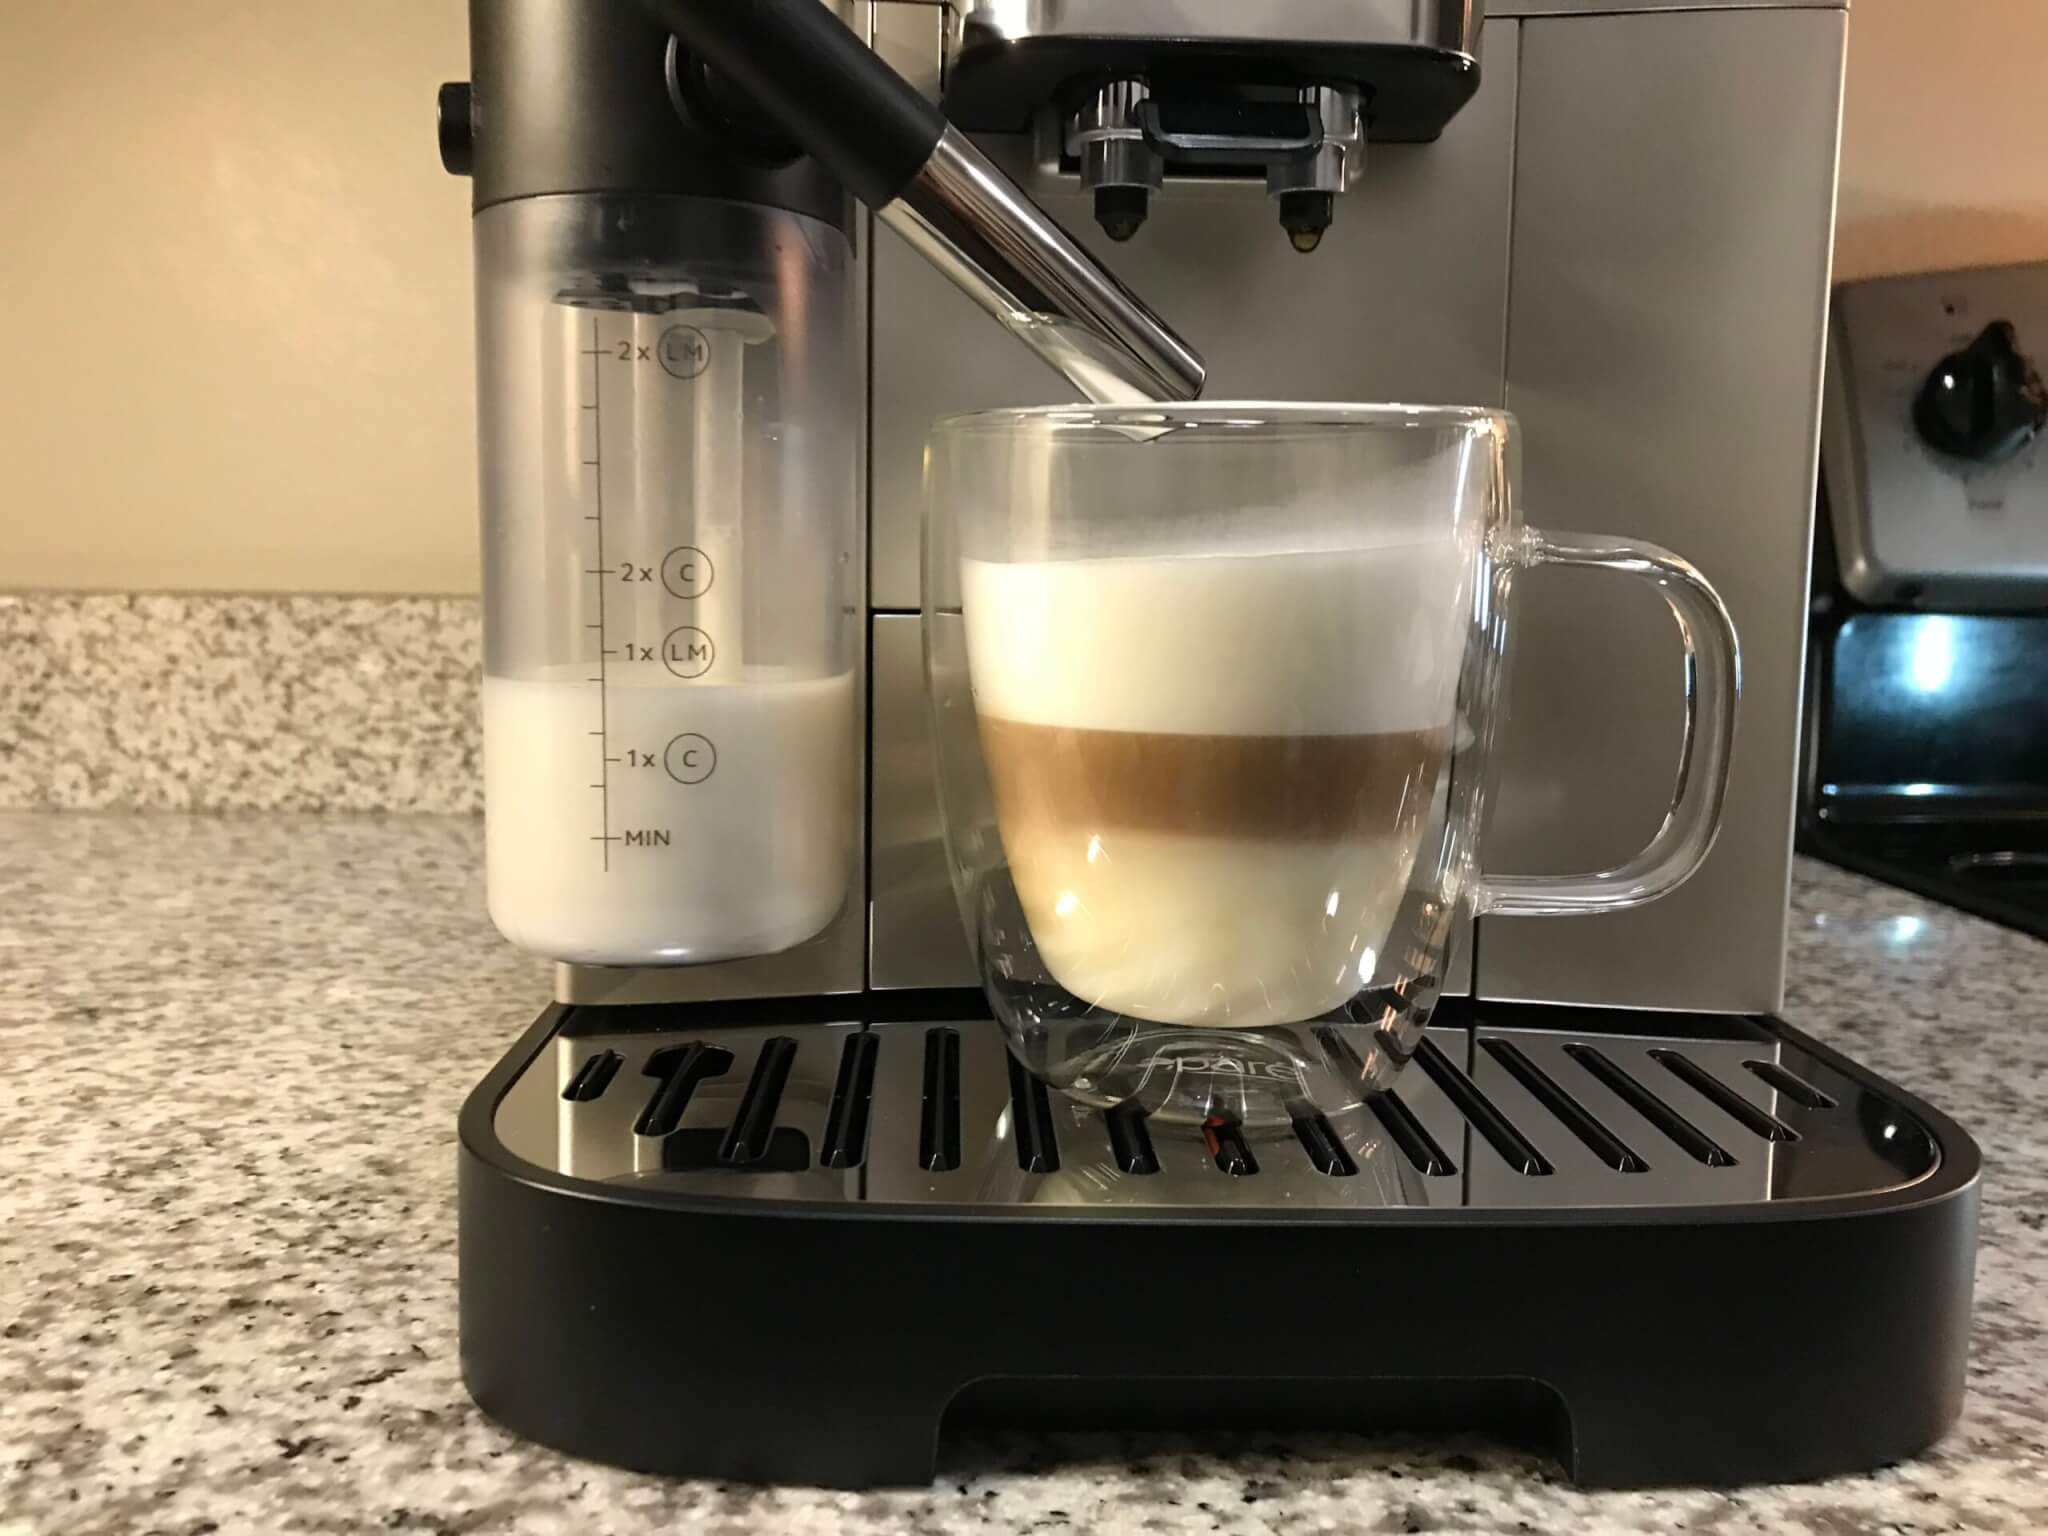 De’Longhi Magnifica Evo Espresso Machine brewing a latte.